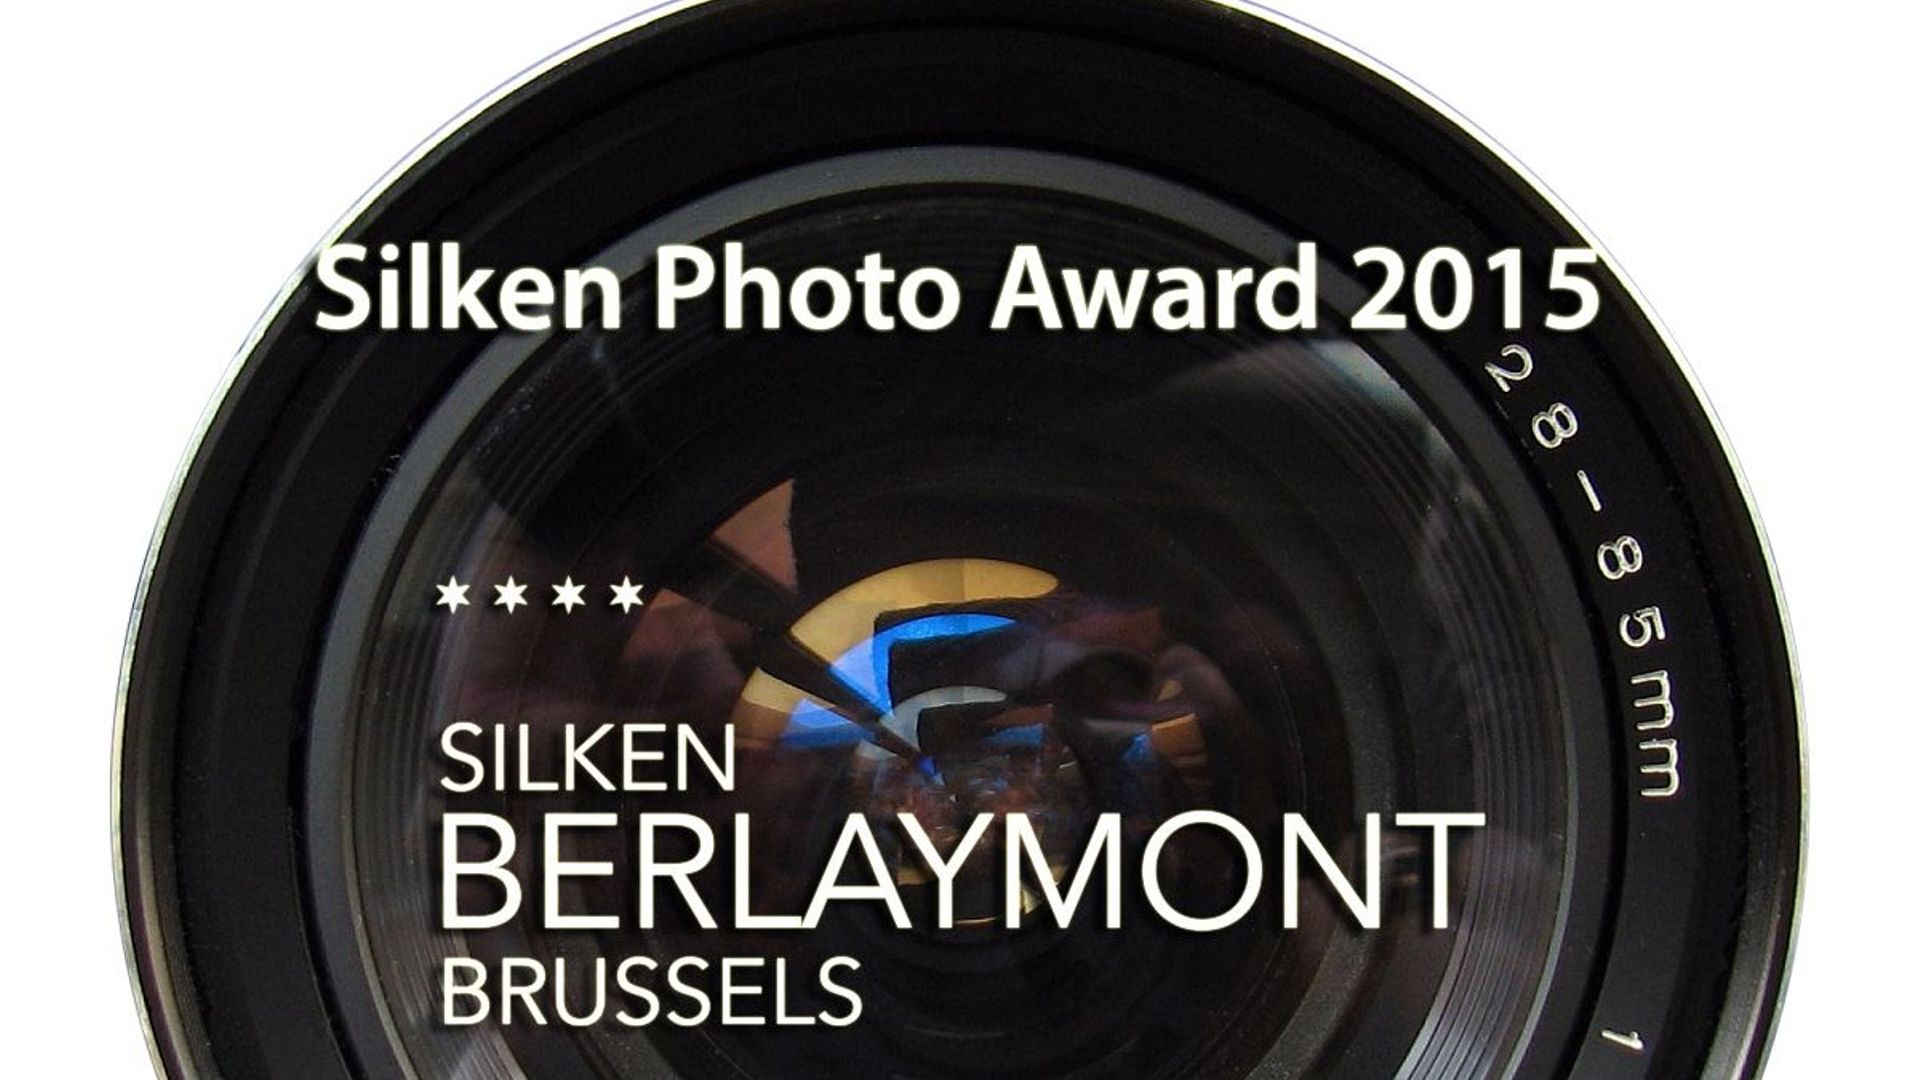 Le Silken Photo Award 2015 est ouvert jusqu'au 31 octobre 2014.